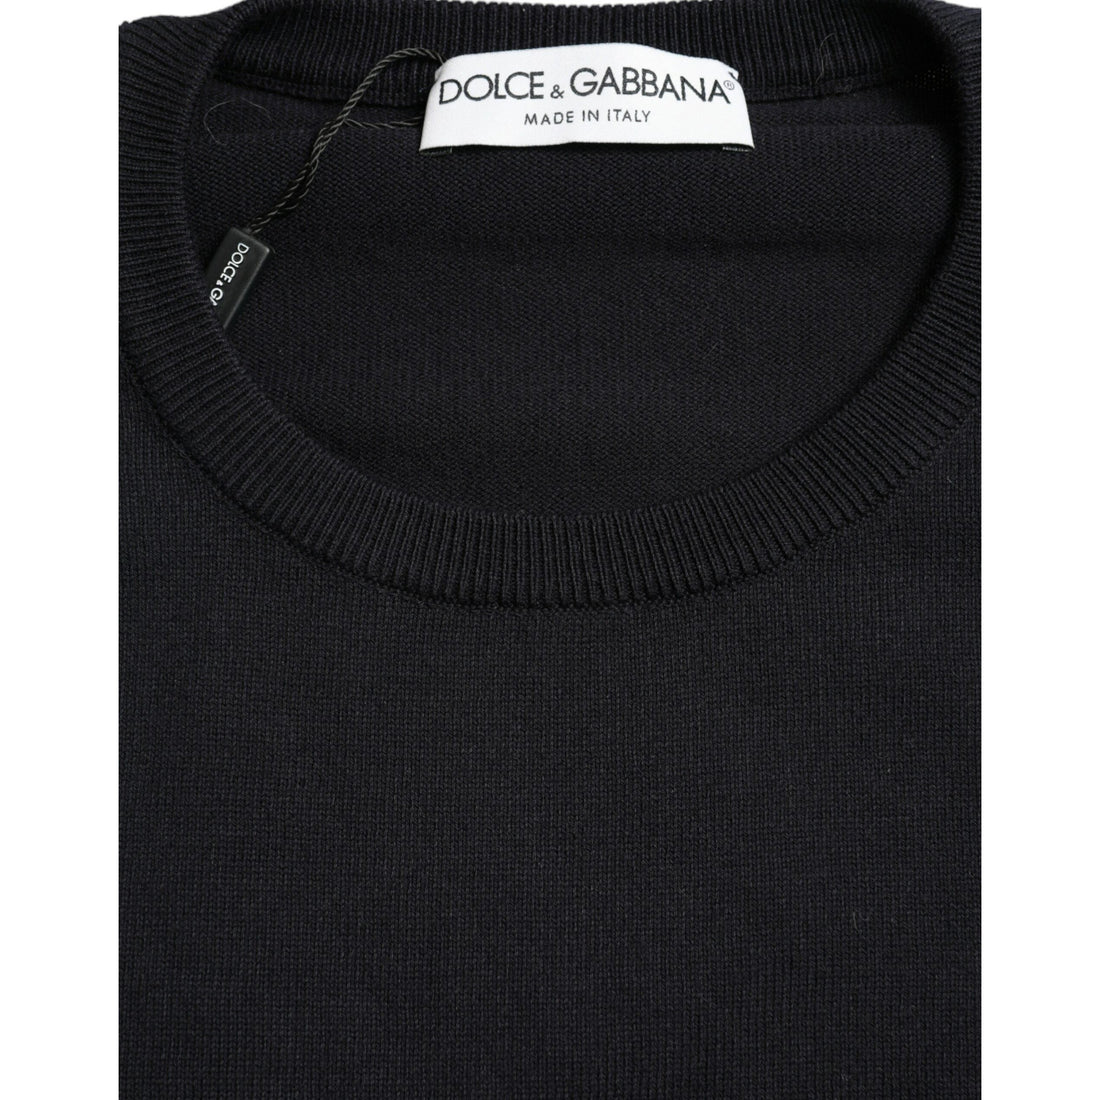 Dolce & Gabbana Blue Cotton Round Neck Pullover Sweater